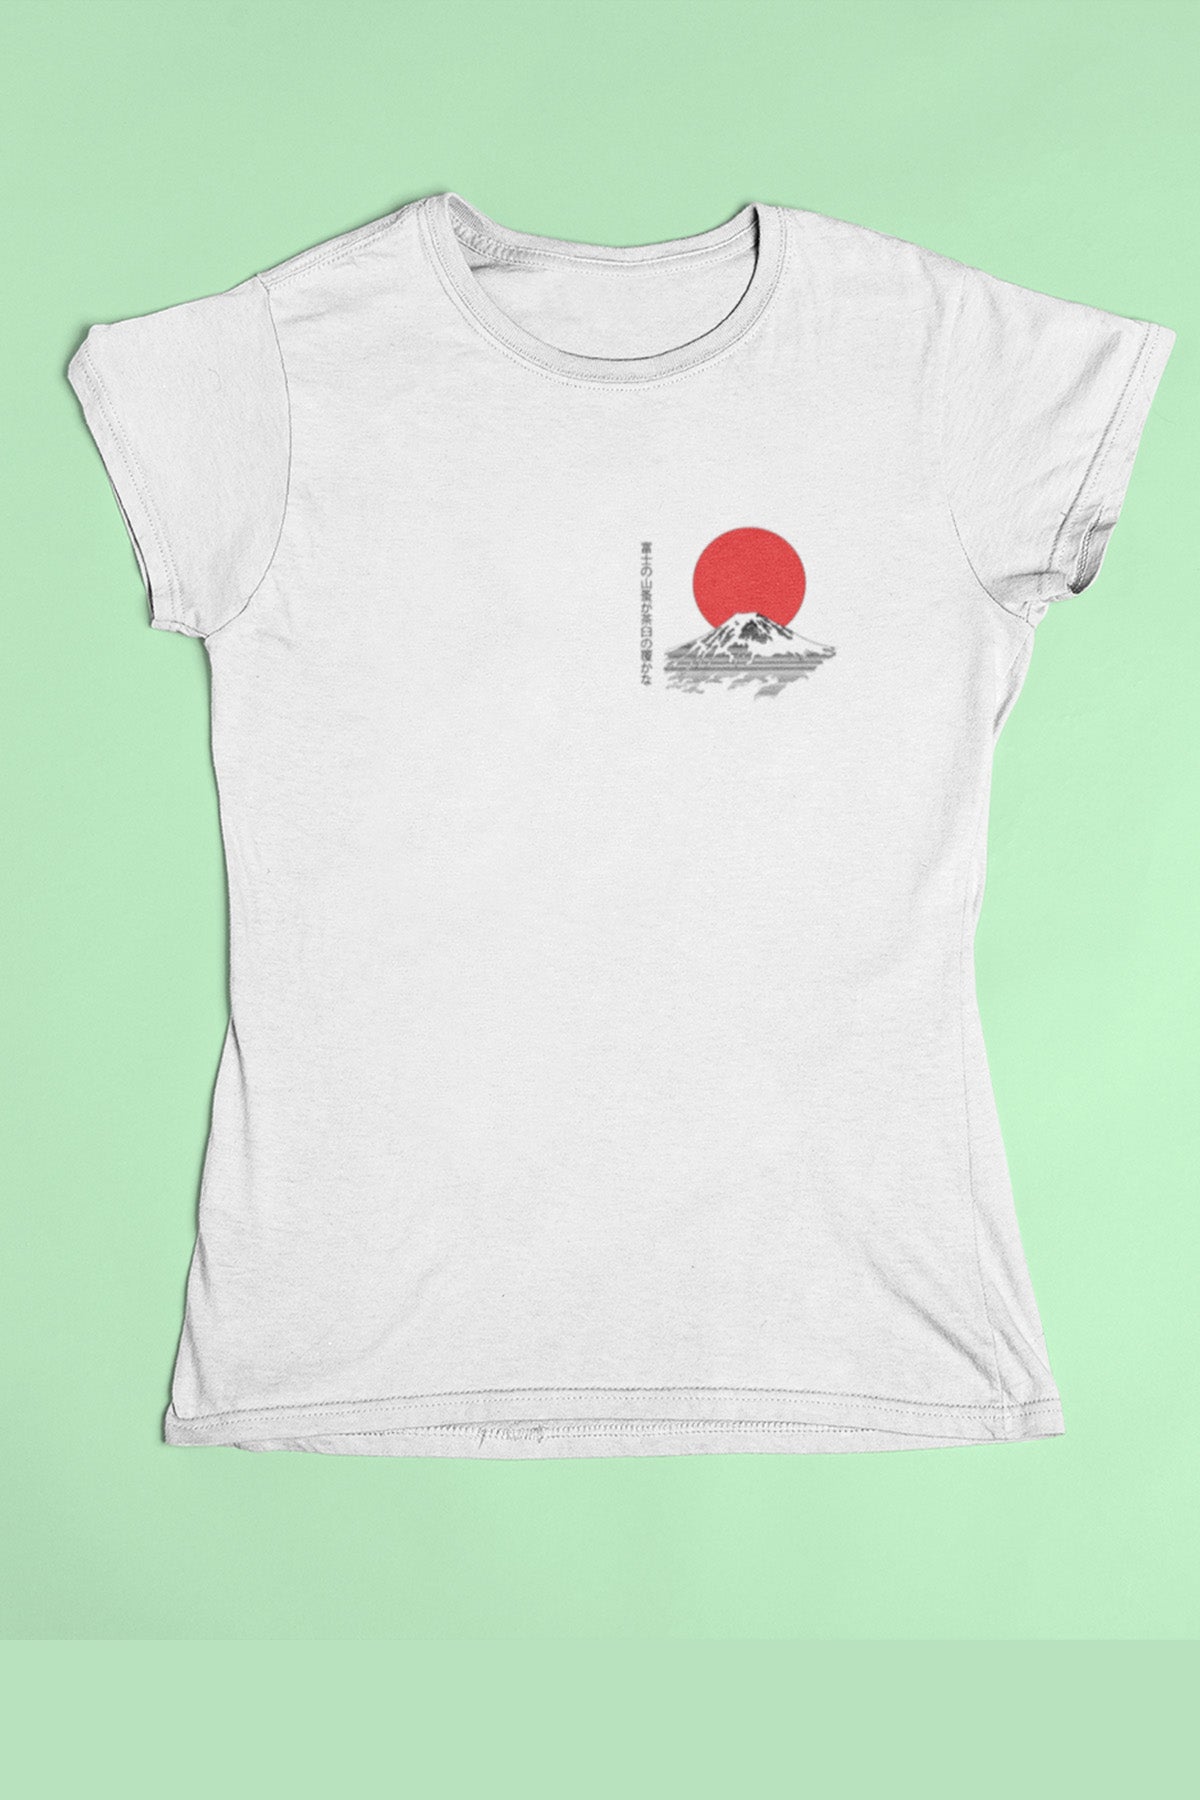 Fuji Haiku Men's T-Shirt